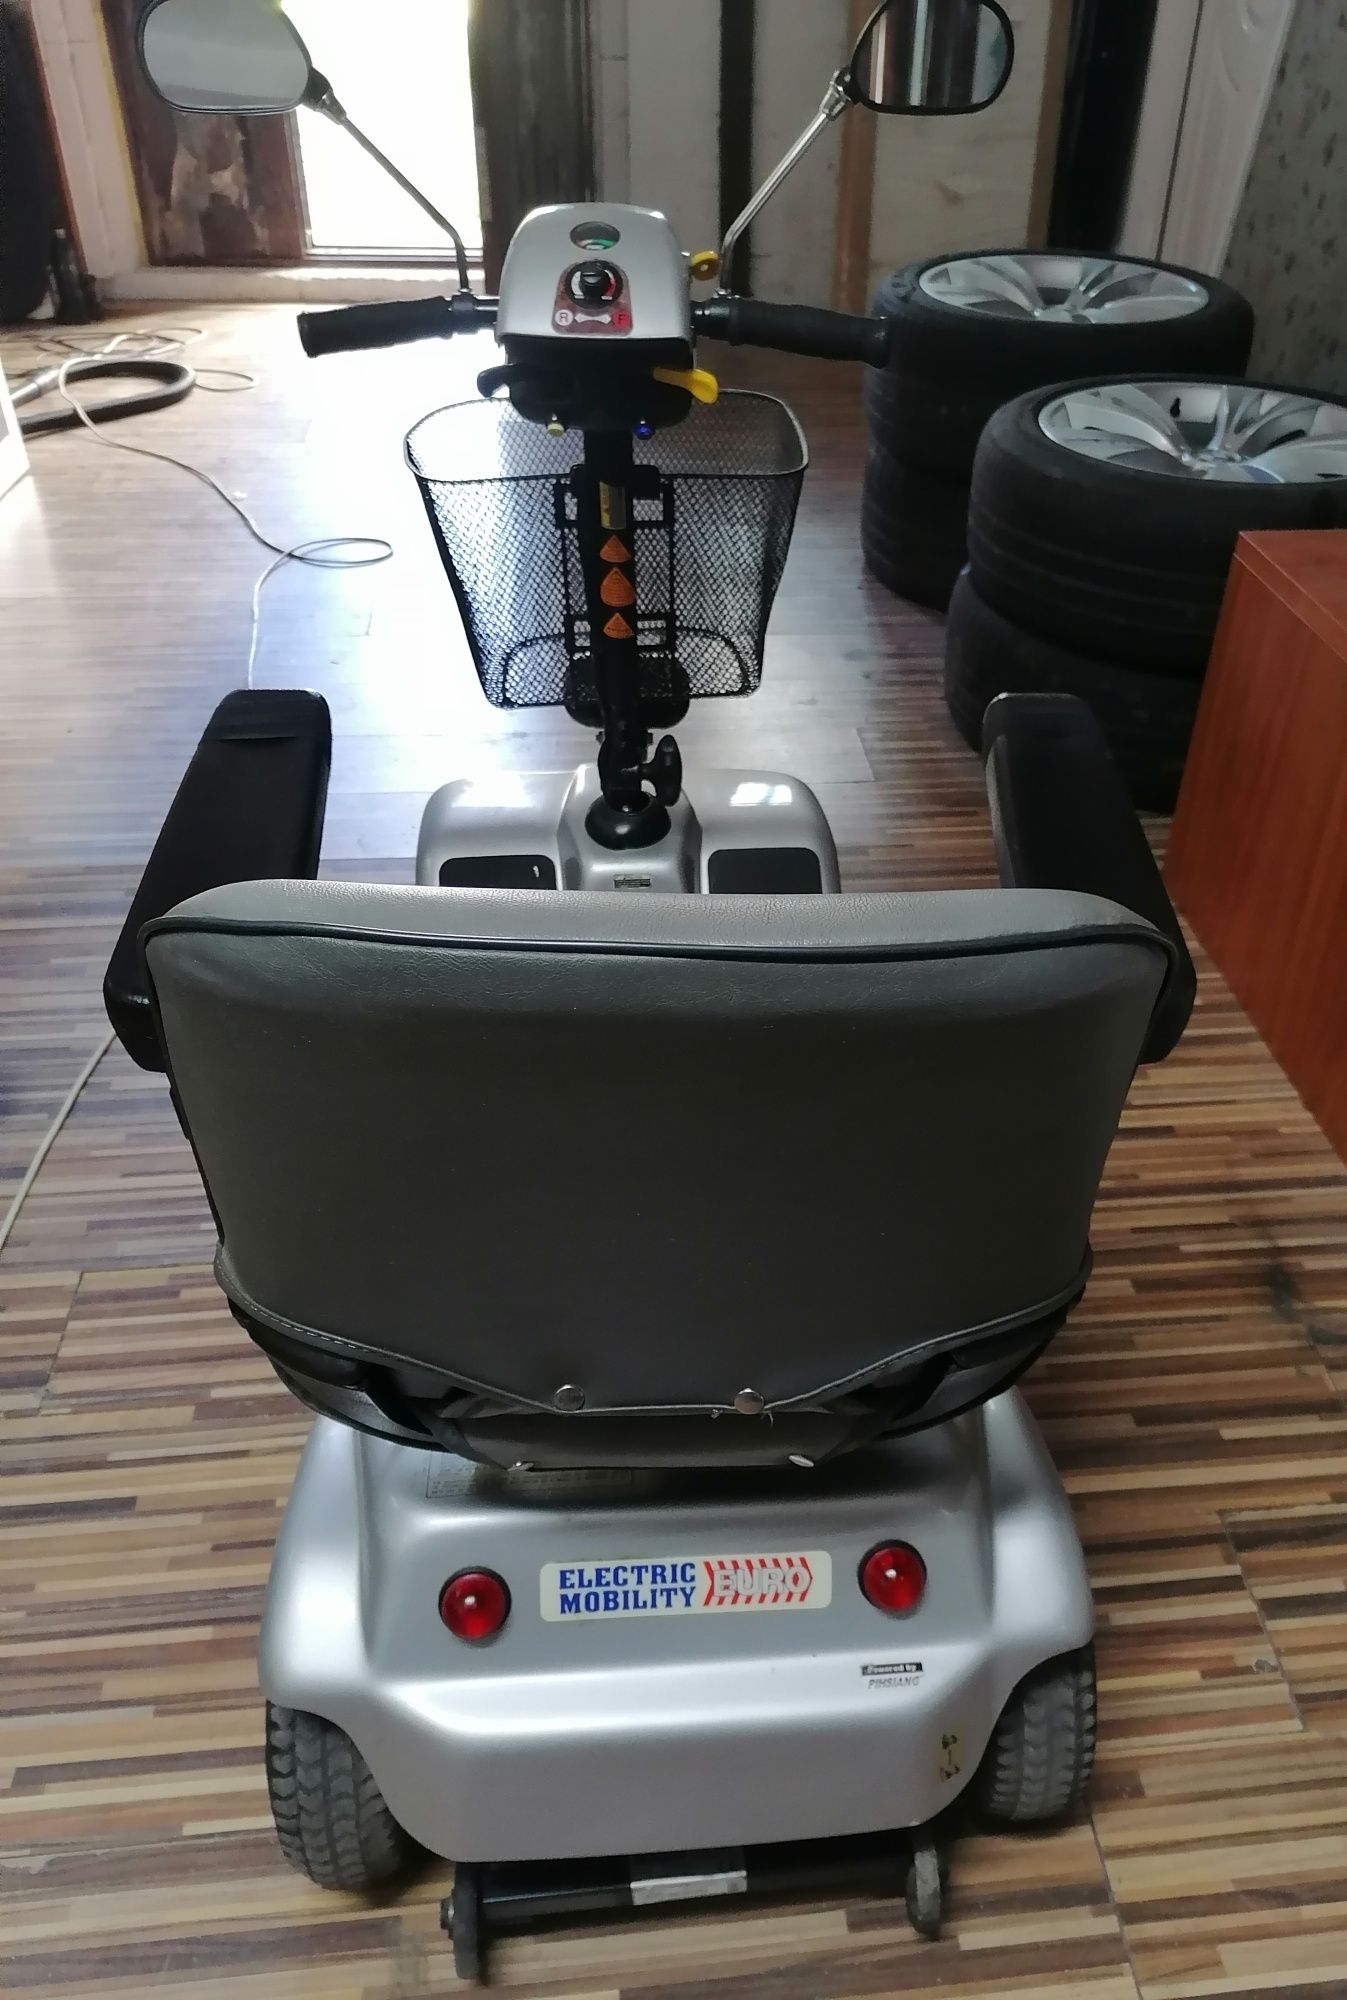 Electric Mobility scooter FE 388 EM acumulatori noi